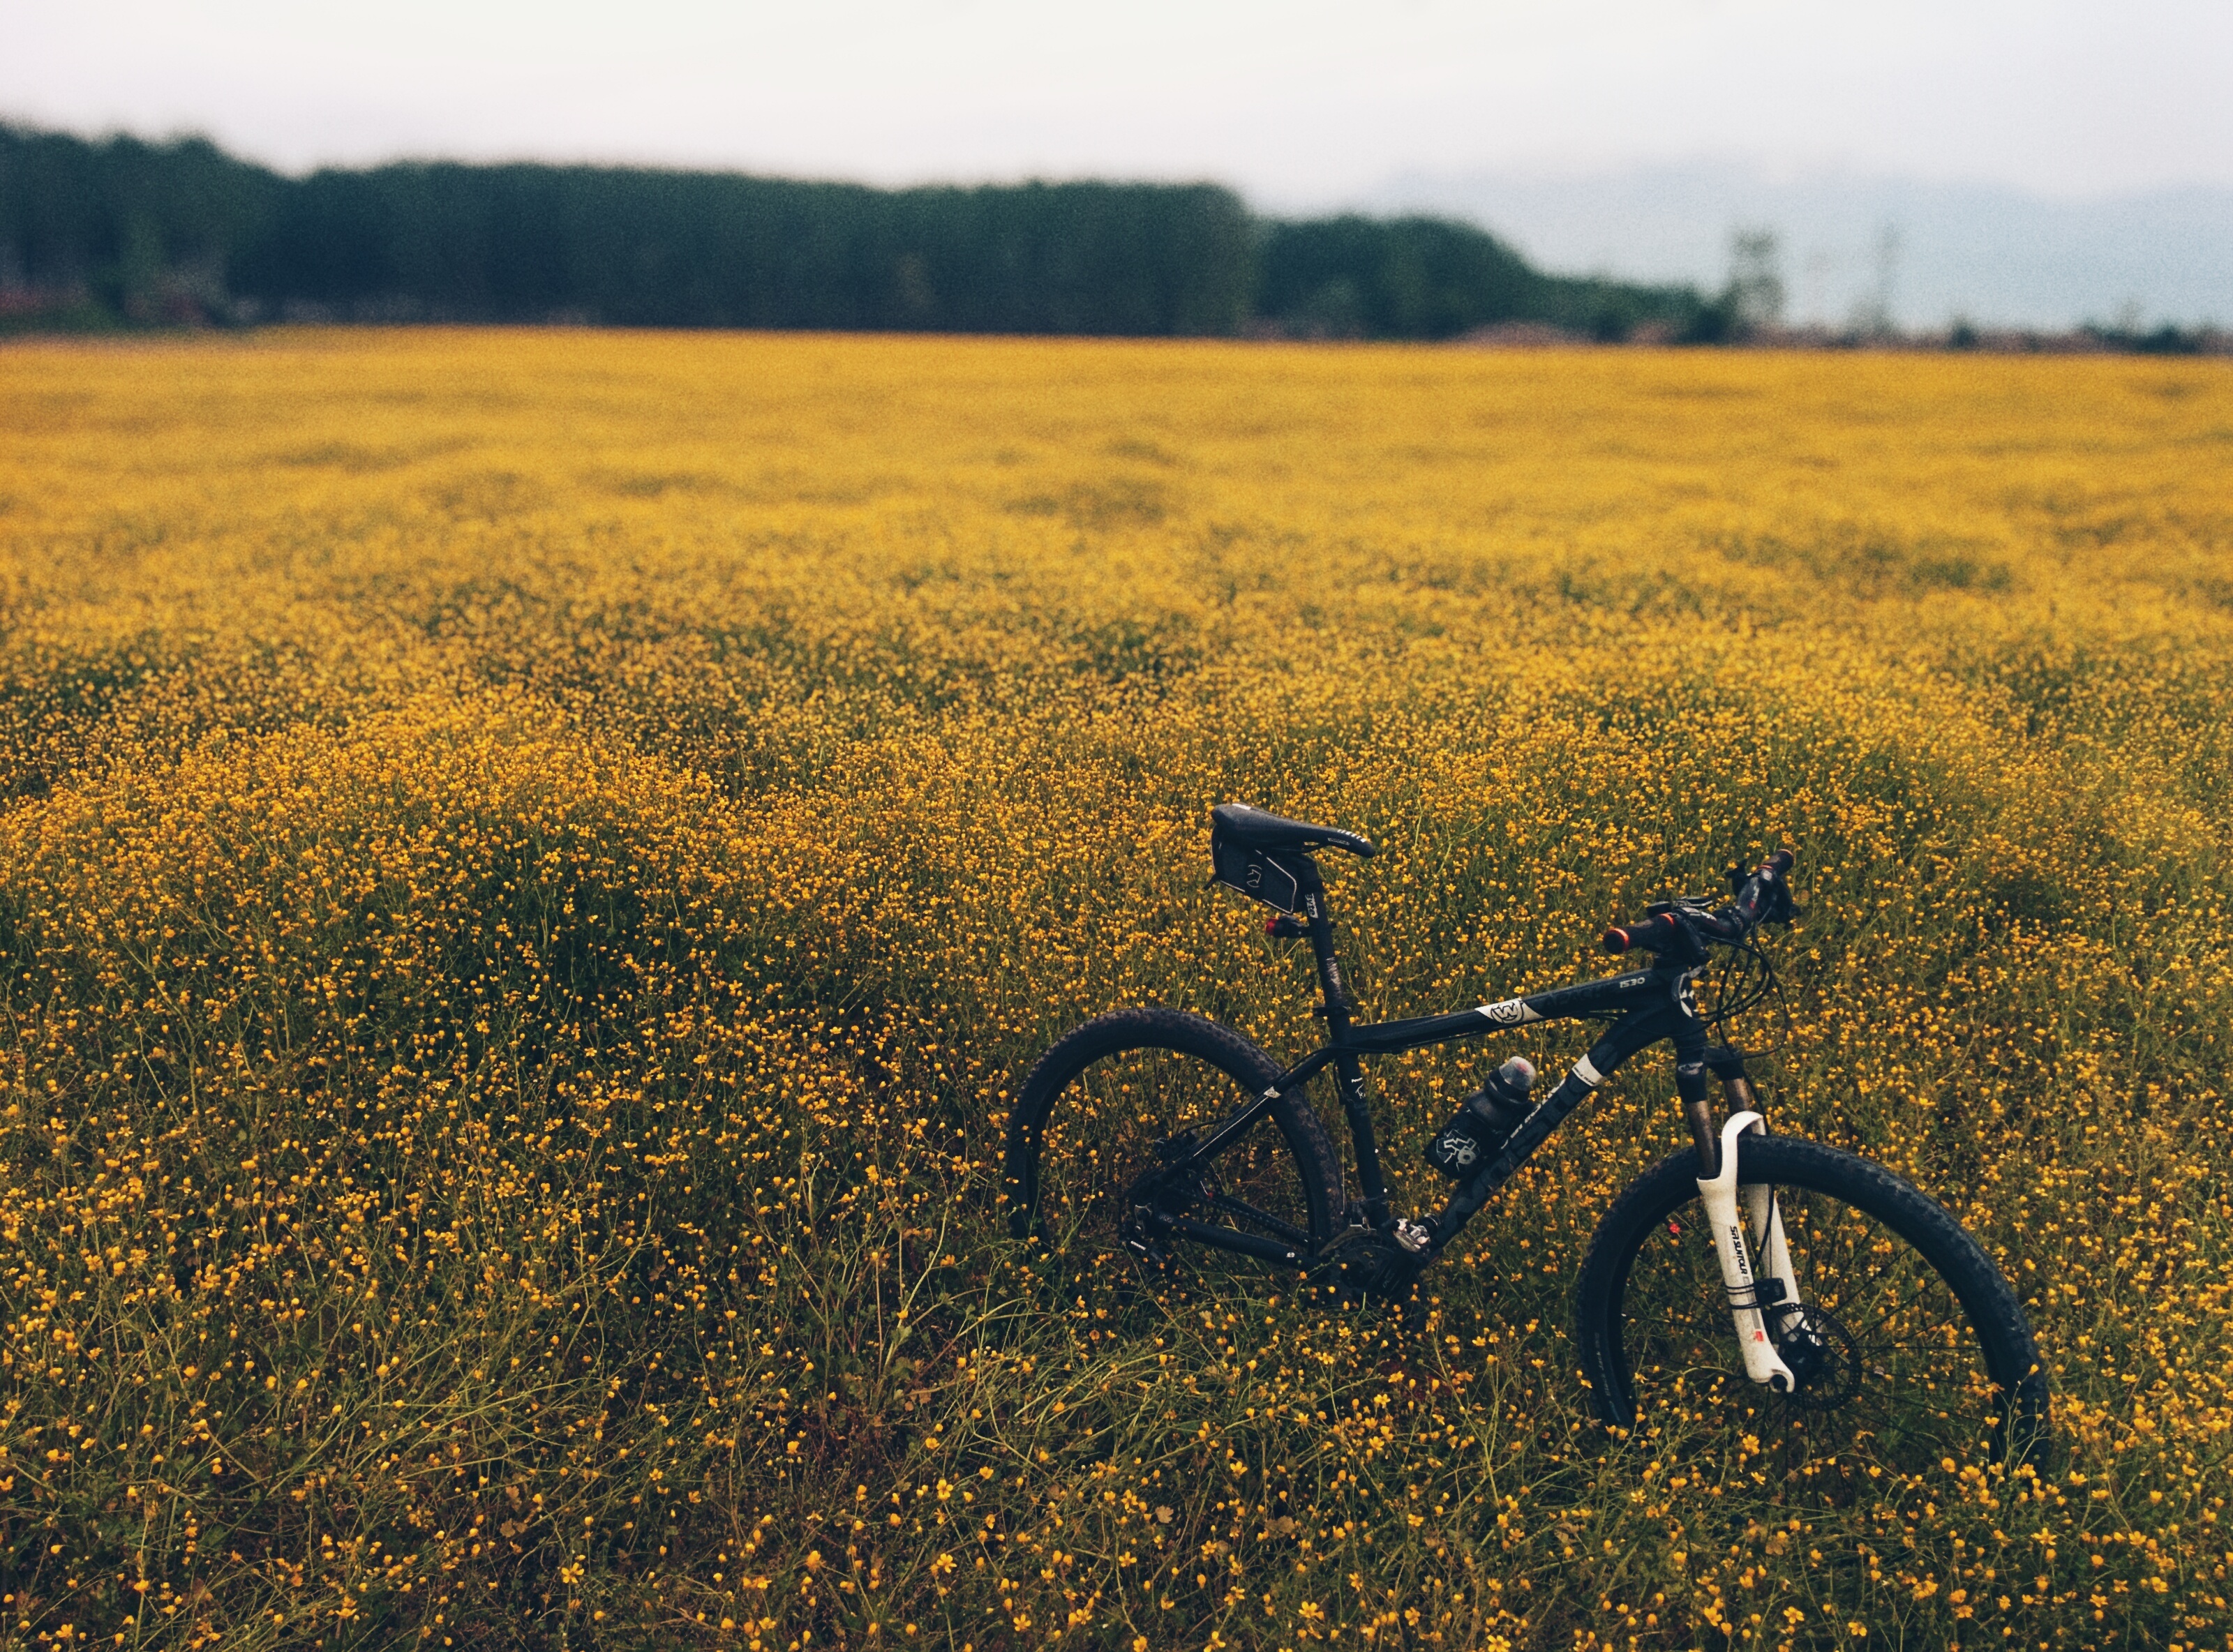 Бесплатное фото Велосипед в поле с желтыми цветочками